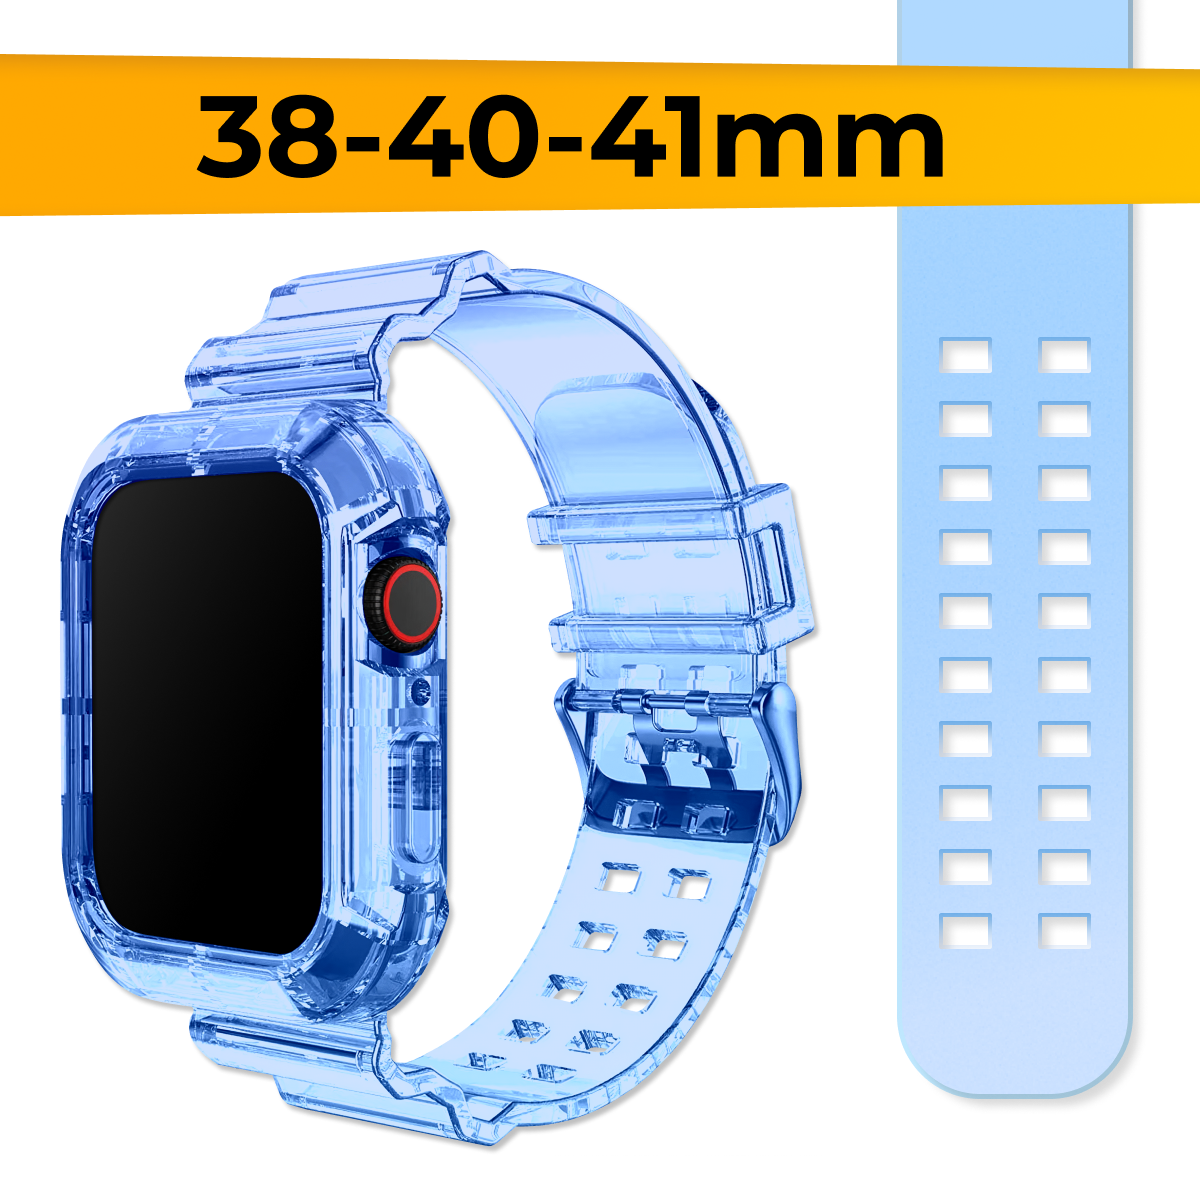 Прозрачный силиконовый ремешок для Apple Watch 1-9, SE, 38-40-41 mm / Сменный браслет на часы Эпл Вотч 1, 2, 3, 4, 5, 6, 7, 8, 9 и СE / Синий